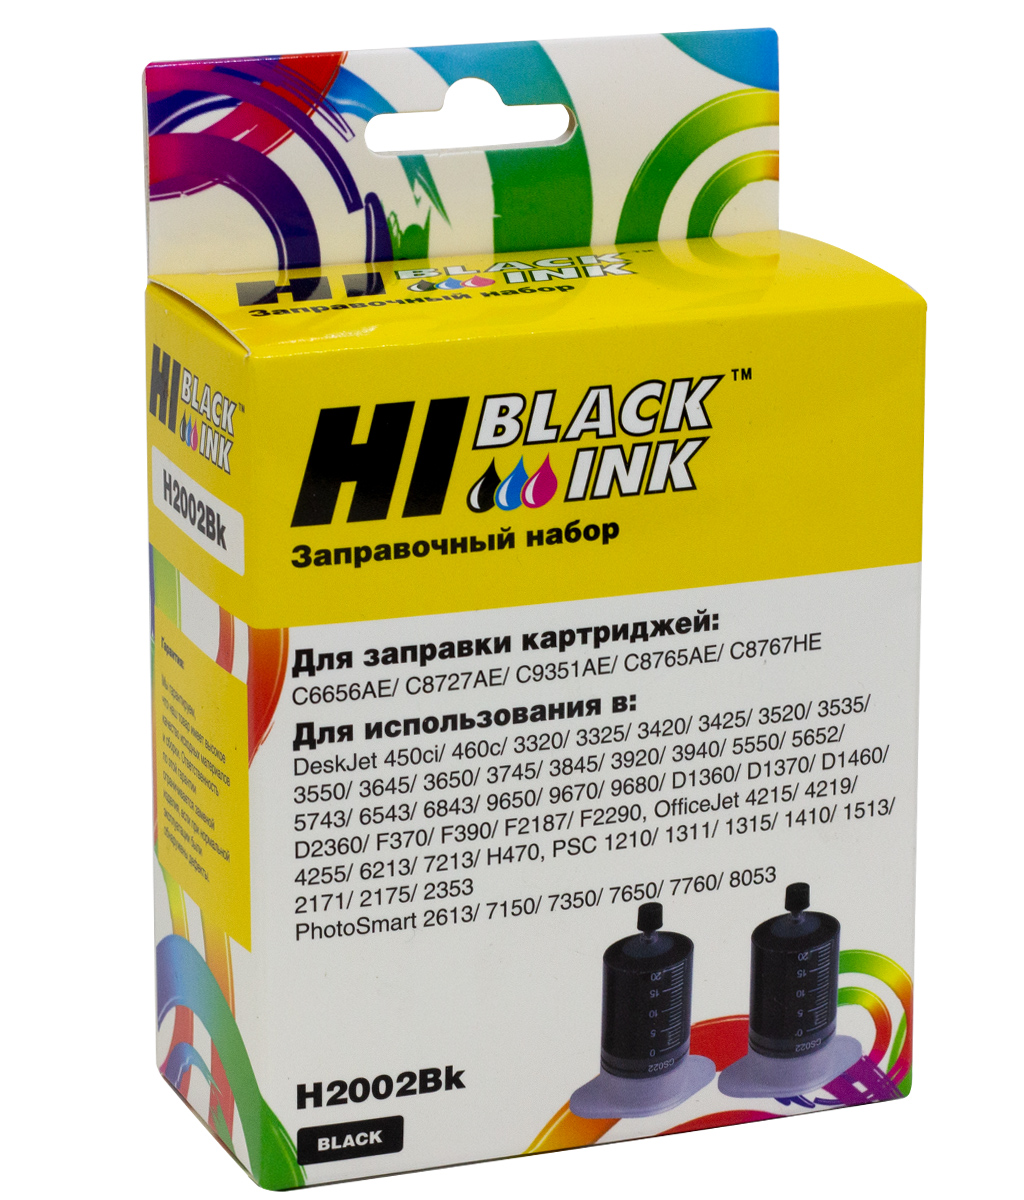 Заправочный набор Hi-Black для HP C9351A/C8765H/C8767H/HPC6656A/C8727A, Bk, 2x20 мл. - купить с доставкой по России